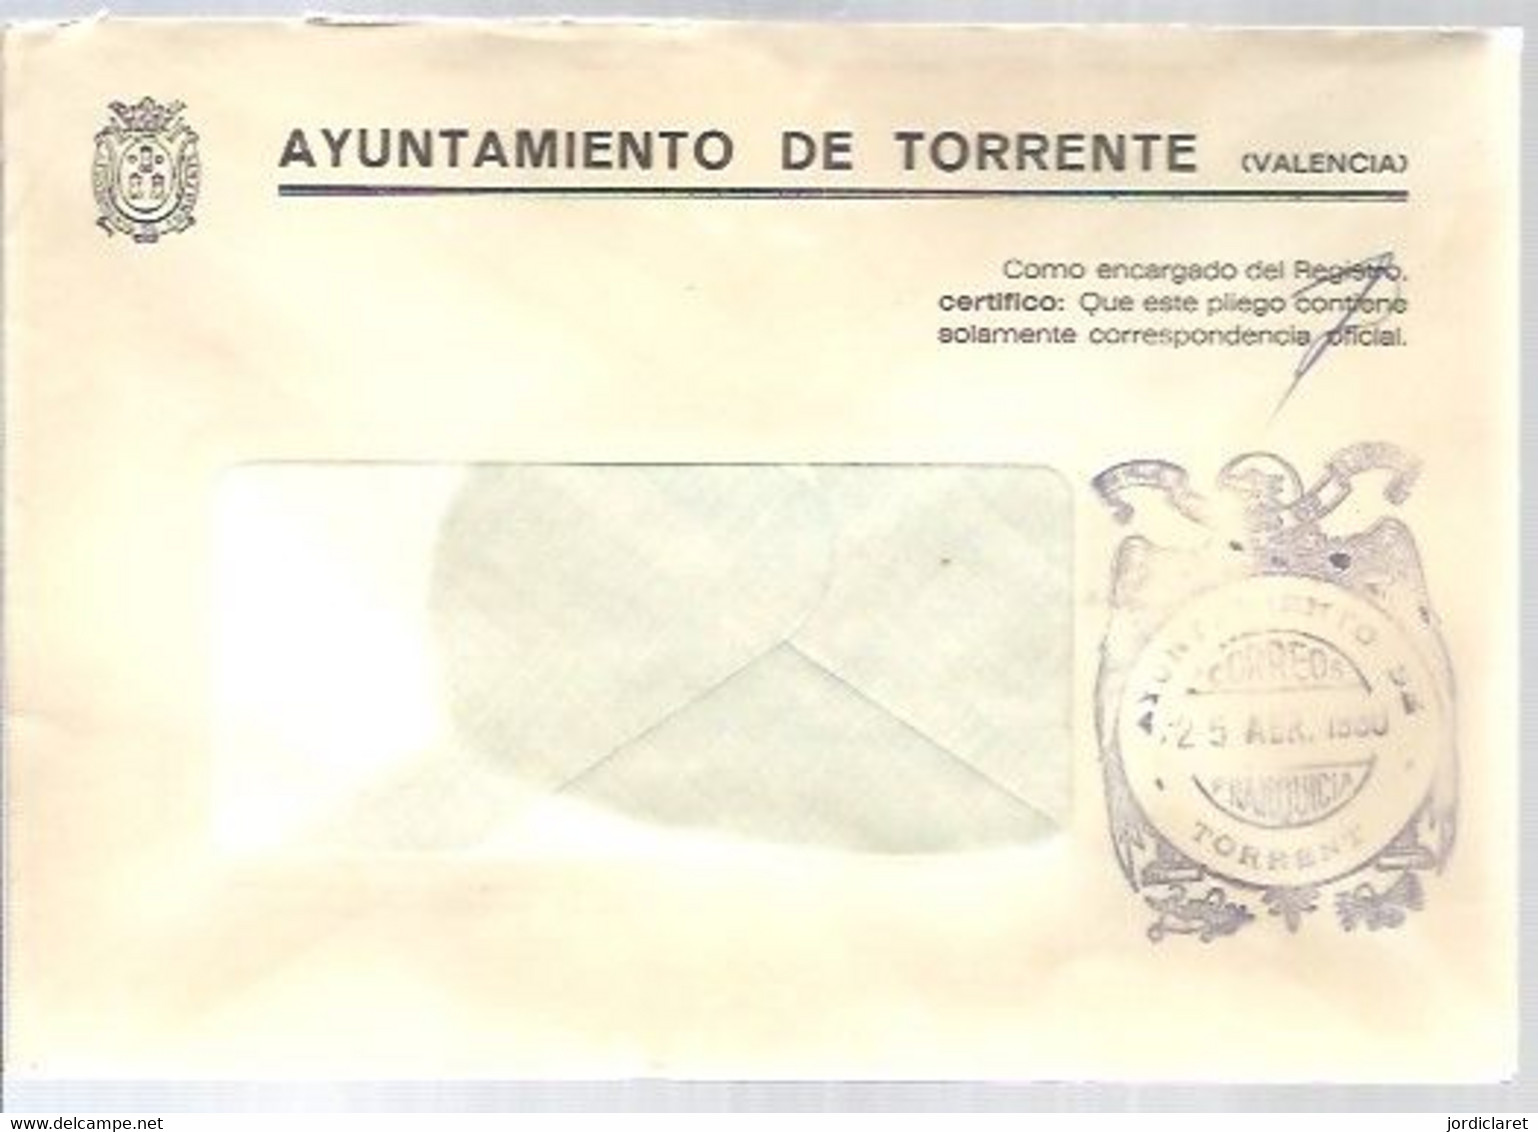 AYUNTAMIENTO DE TORRENTE 1980 - Postage Free